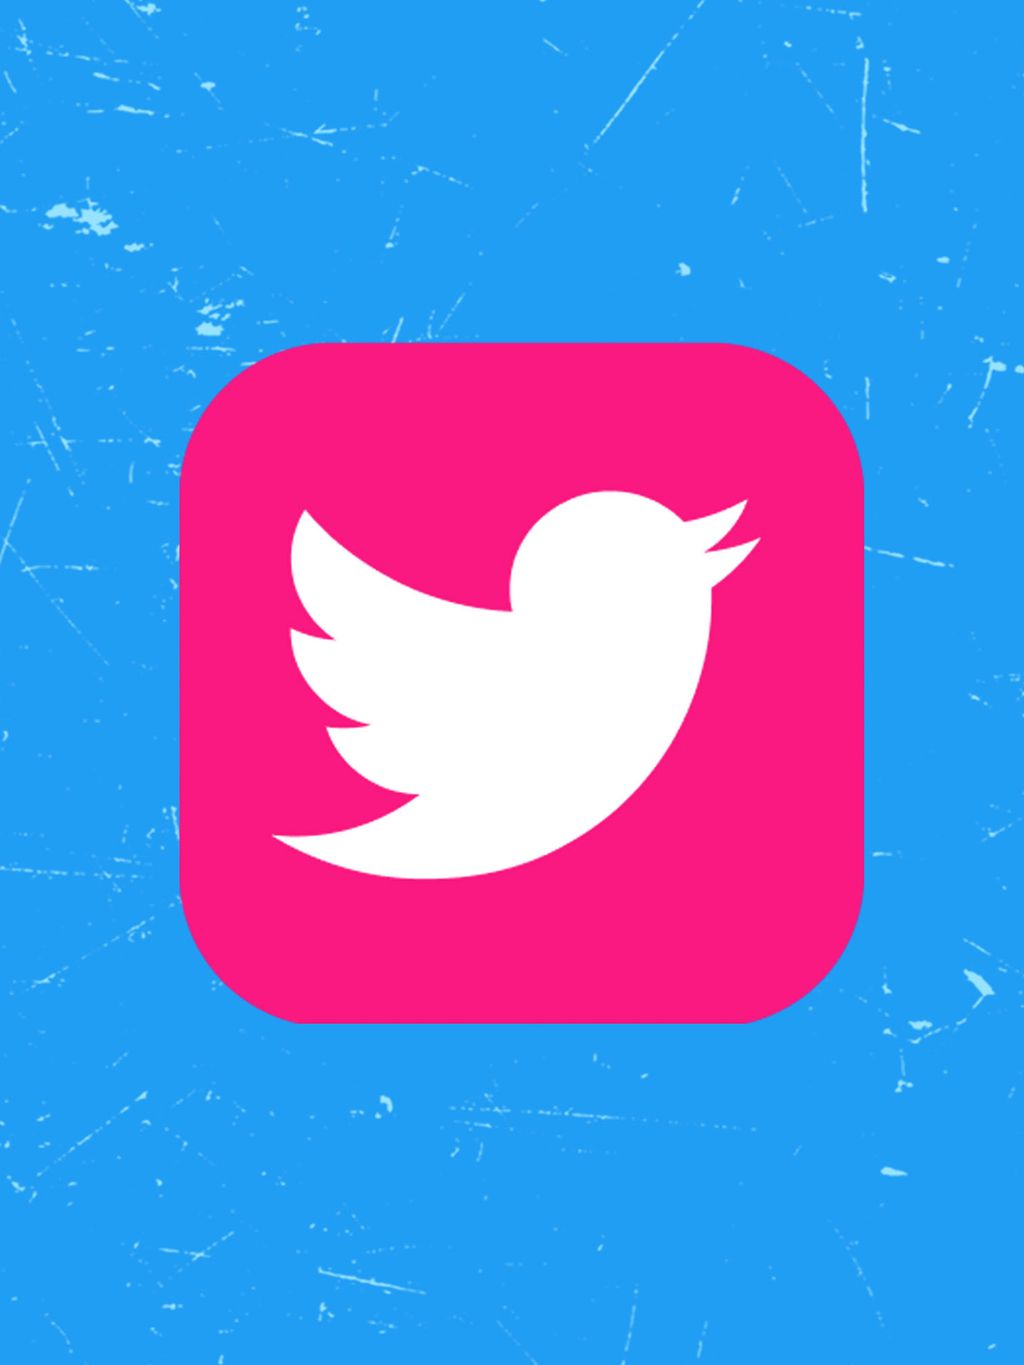 Cansou do ícone azul do Twitter? Sem problemas: haverá opções de customizar as cores do botão do Twitter no mobile (Imagem: Twitter/Divulgação)